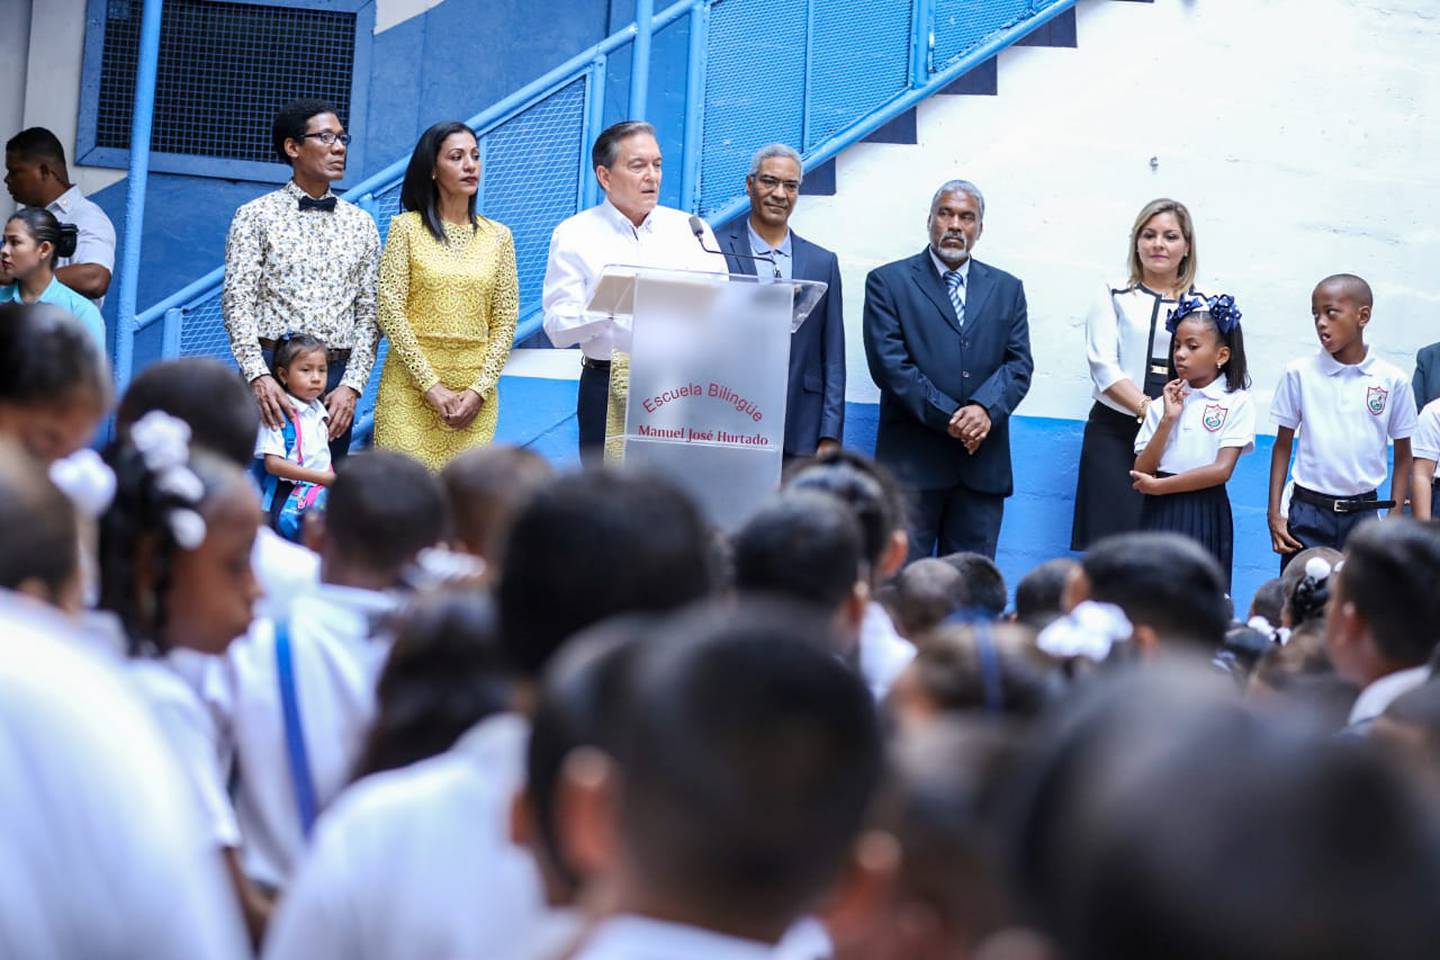 El presidente de la República, Laurentino Cortizo,  inauguró el año lectivo en la Escuela Bilingüe Manuel José Hurtado, en el distrito de Panamá.